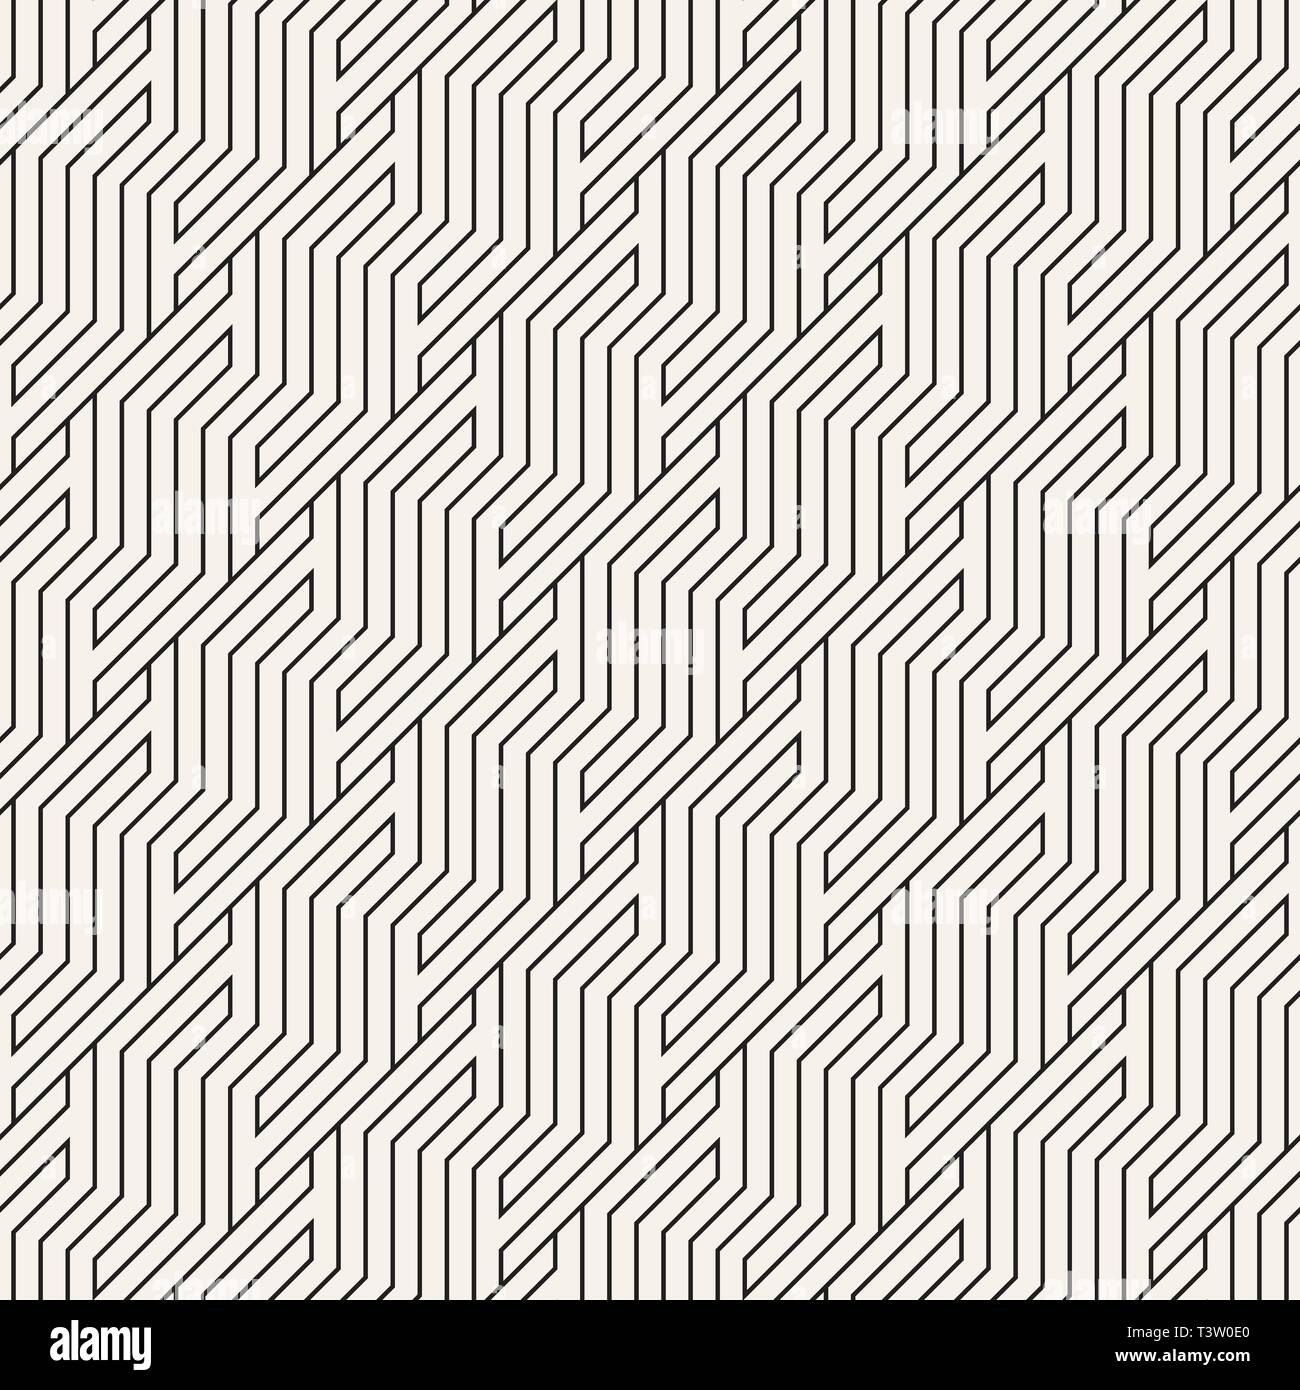 Vektor nahtlose Muster. Geometrische gestreifte Zickzack Ornament. Einfache schrägen Linien Hintergrund. Stock Vektor